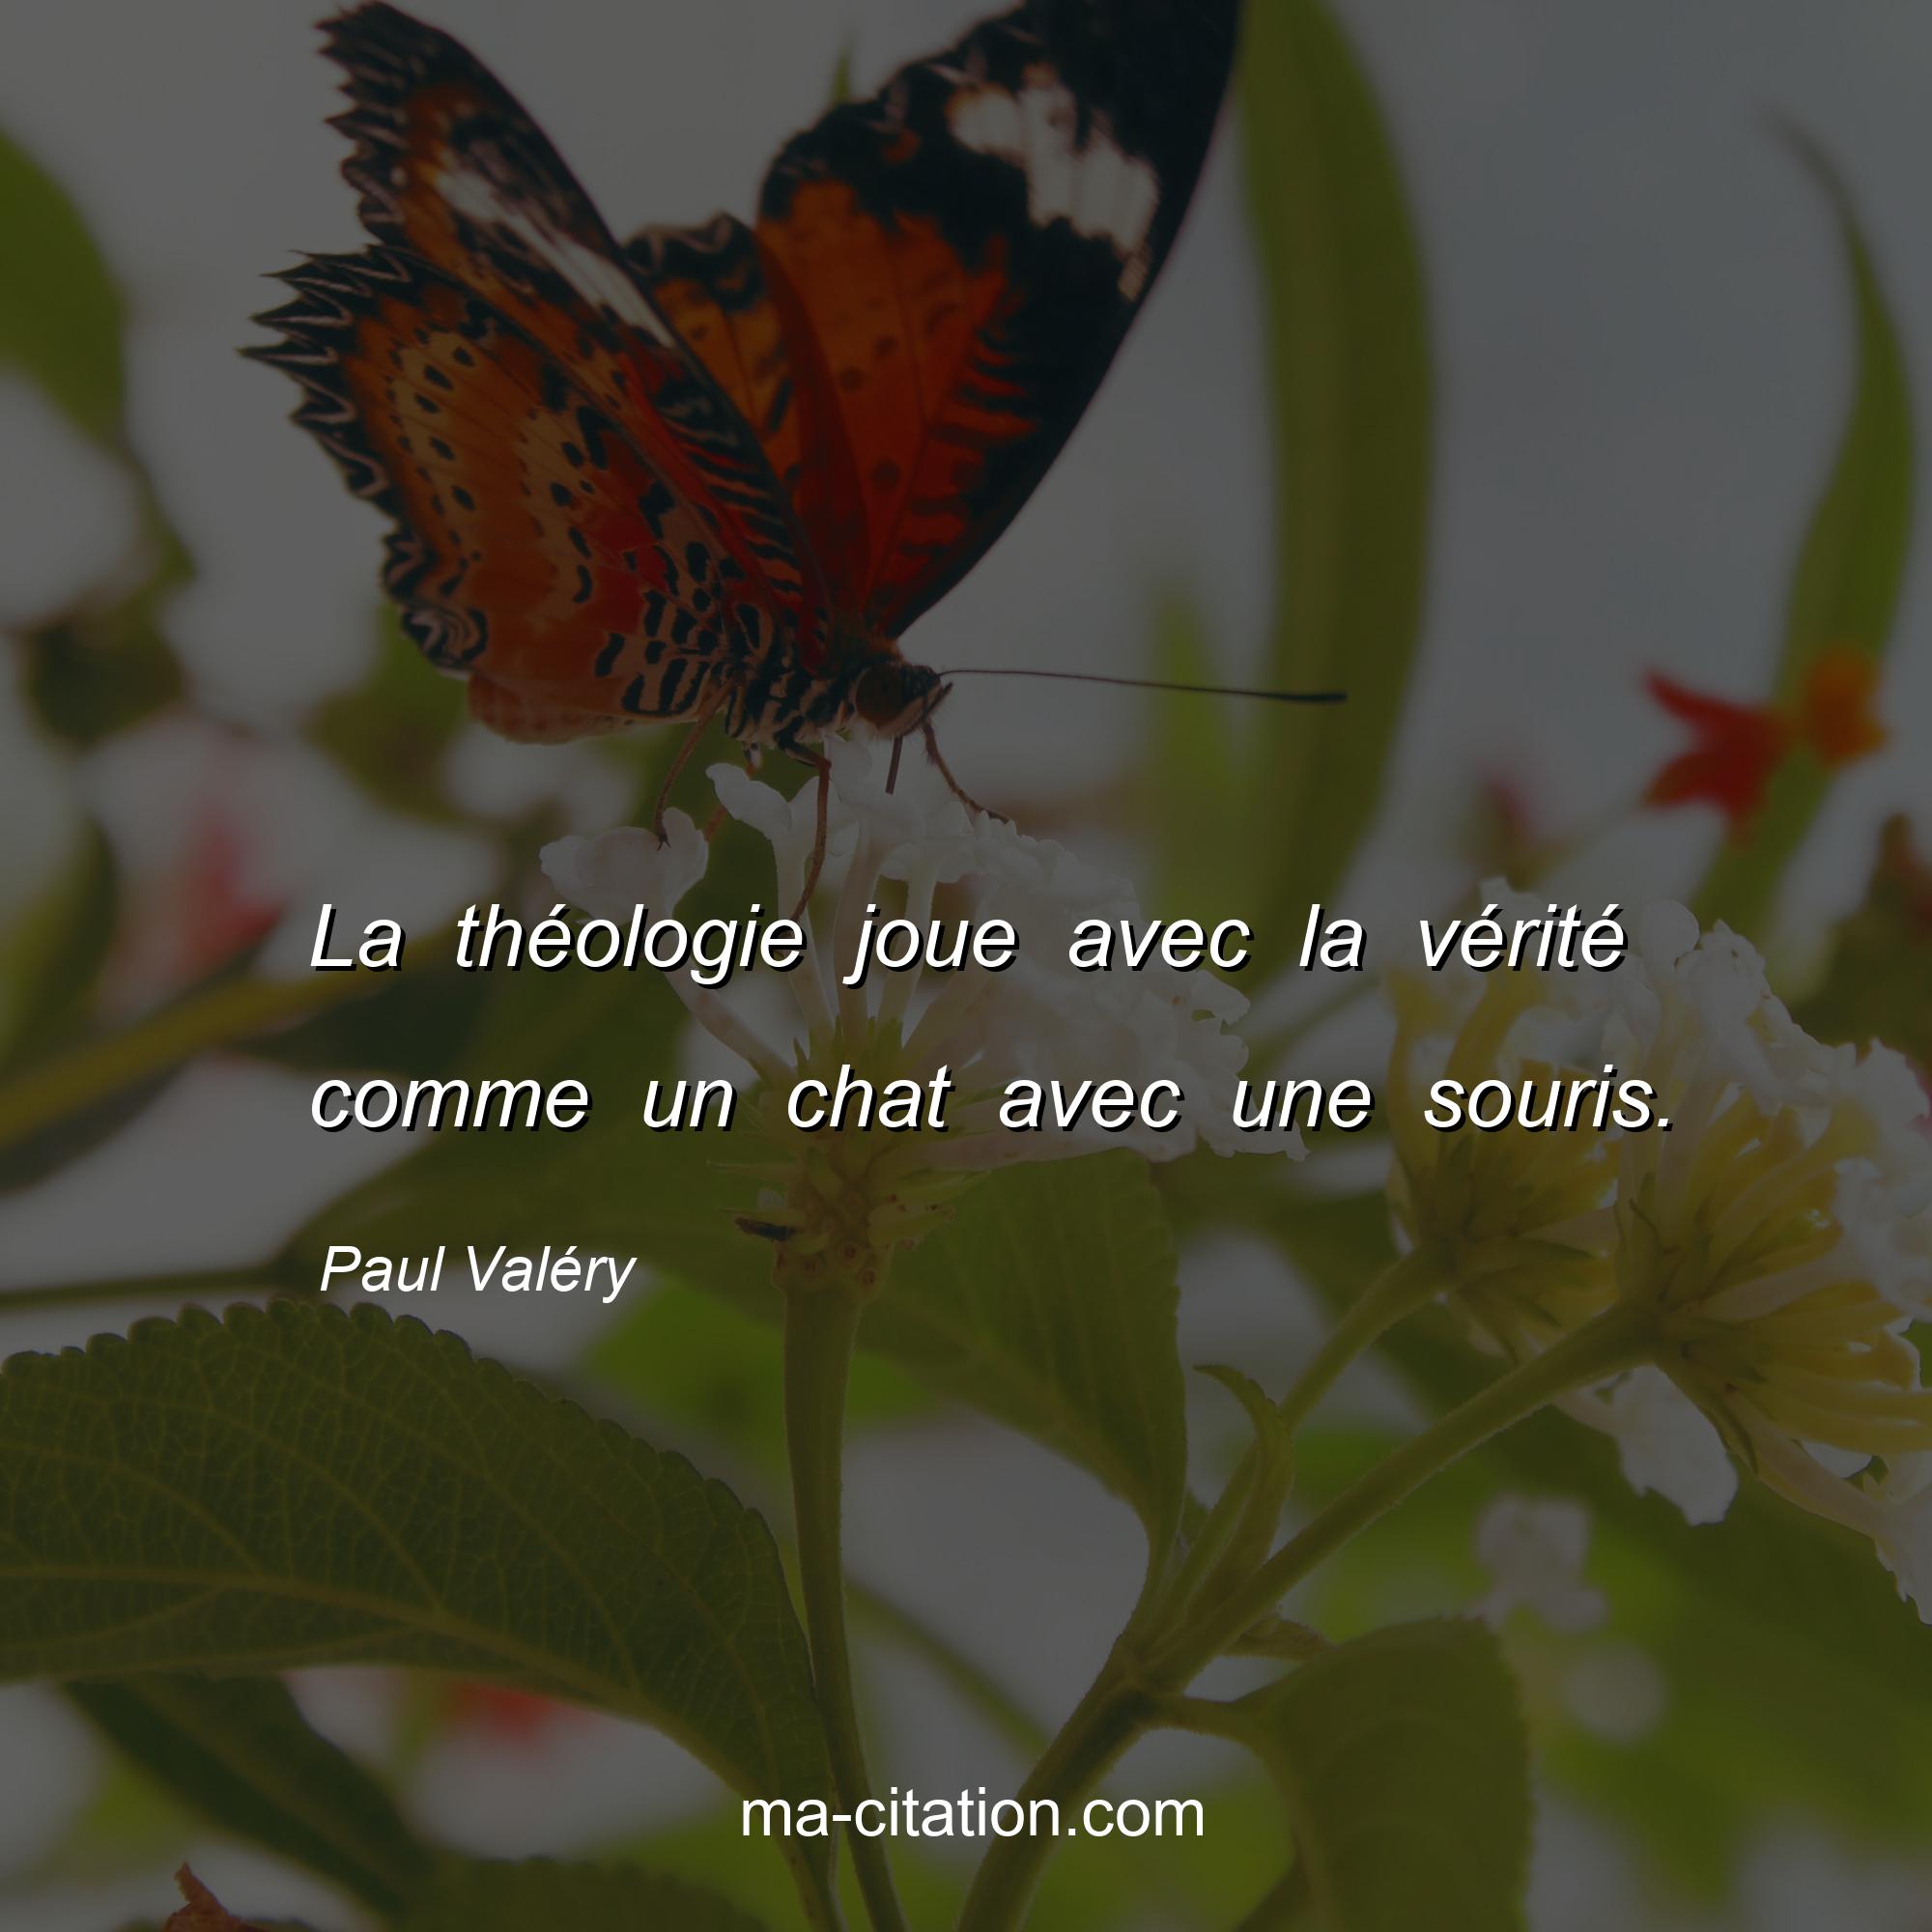 Paul Valéry : La théologie joue avec la vérité comme un chat avec une souris.